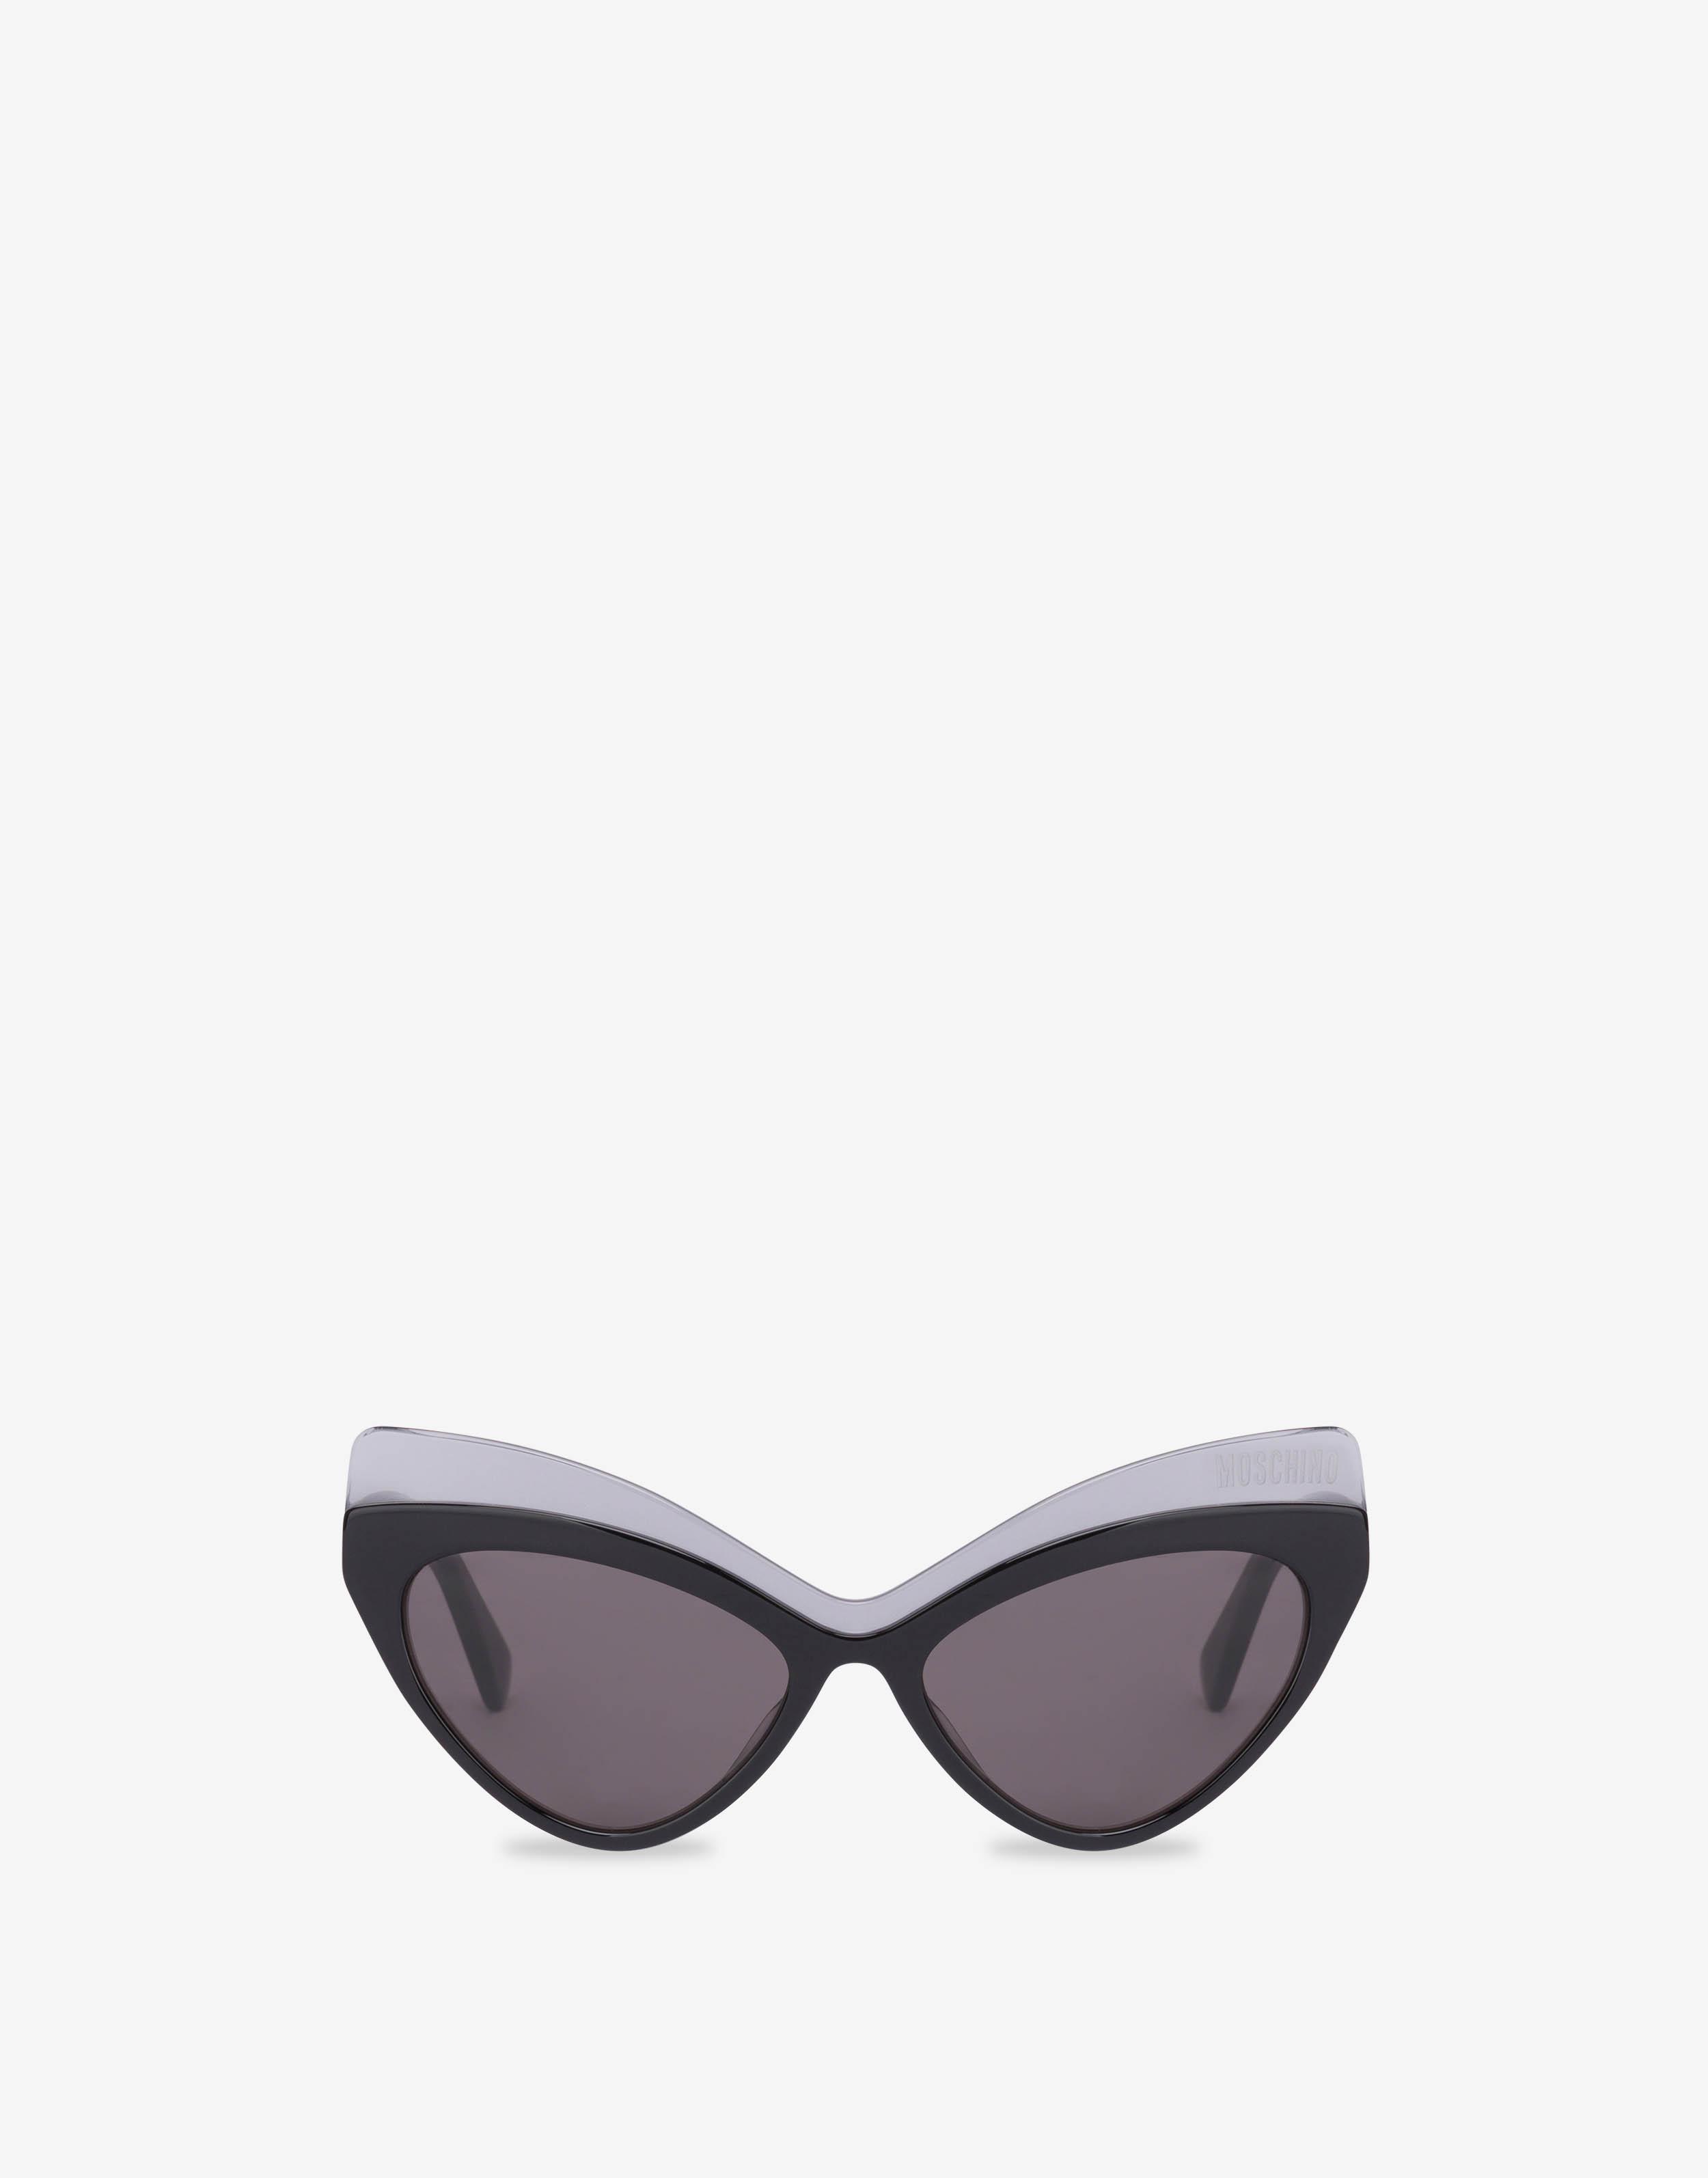 Sunglasses with triangular lenses